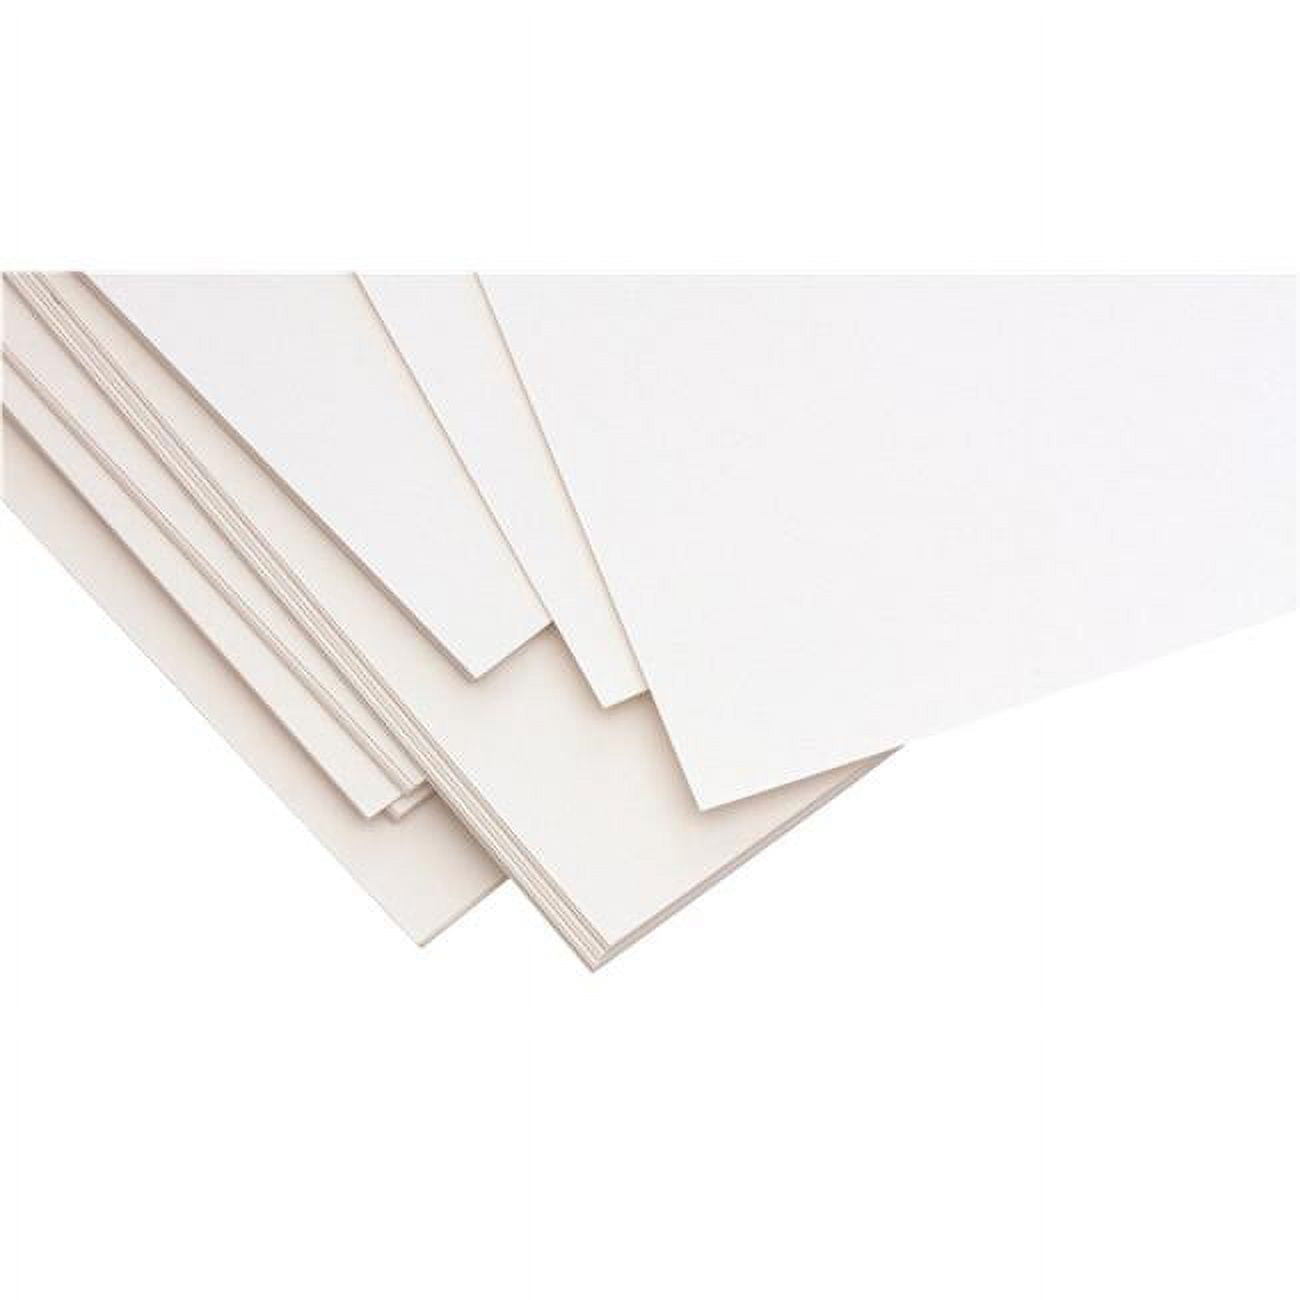 UART Dark Premium Sanded Pastel Paper Grade 400, 9 x 12-10 Pkg